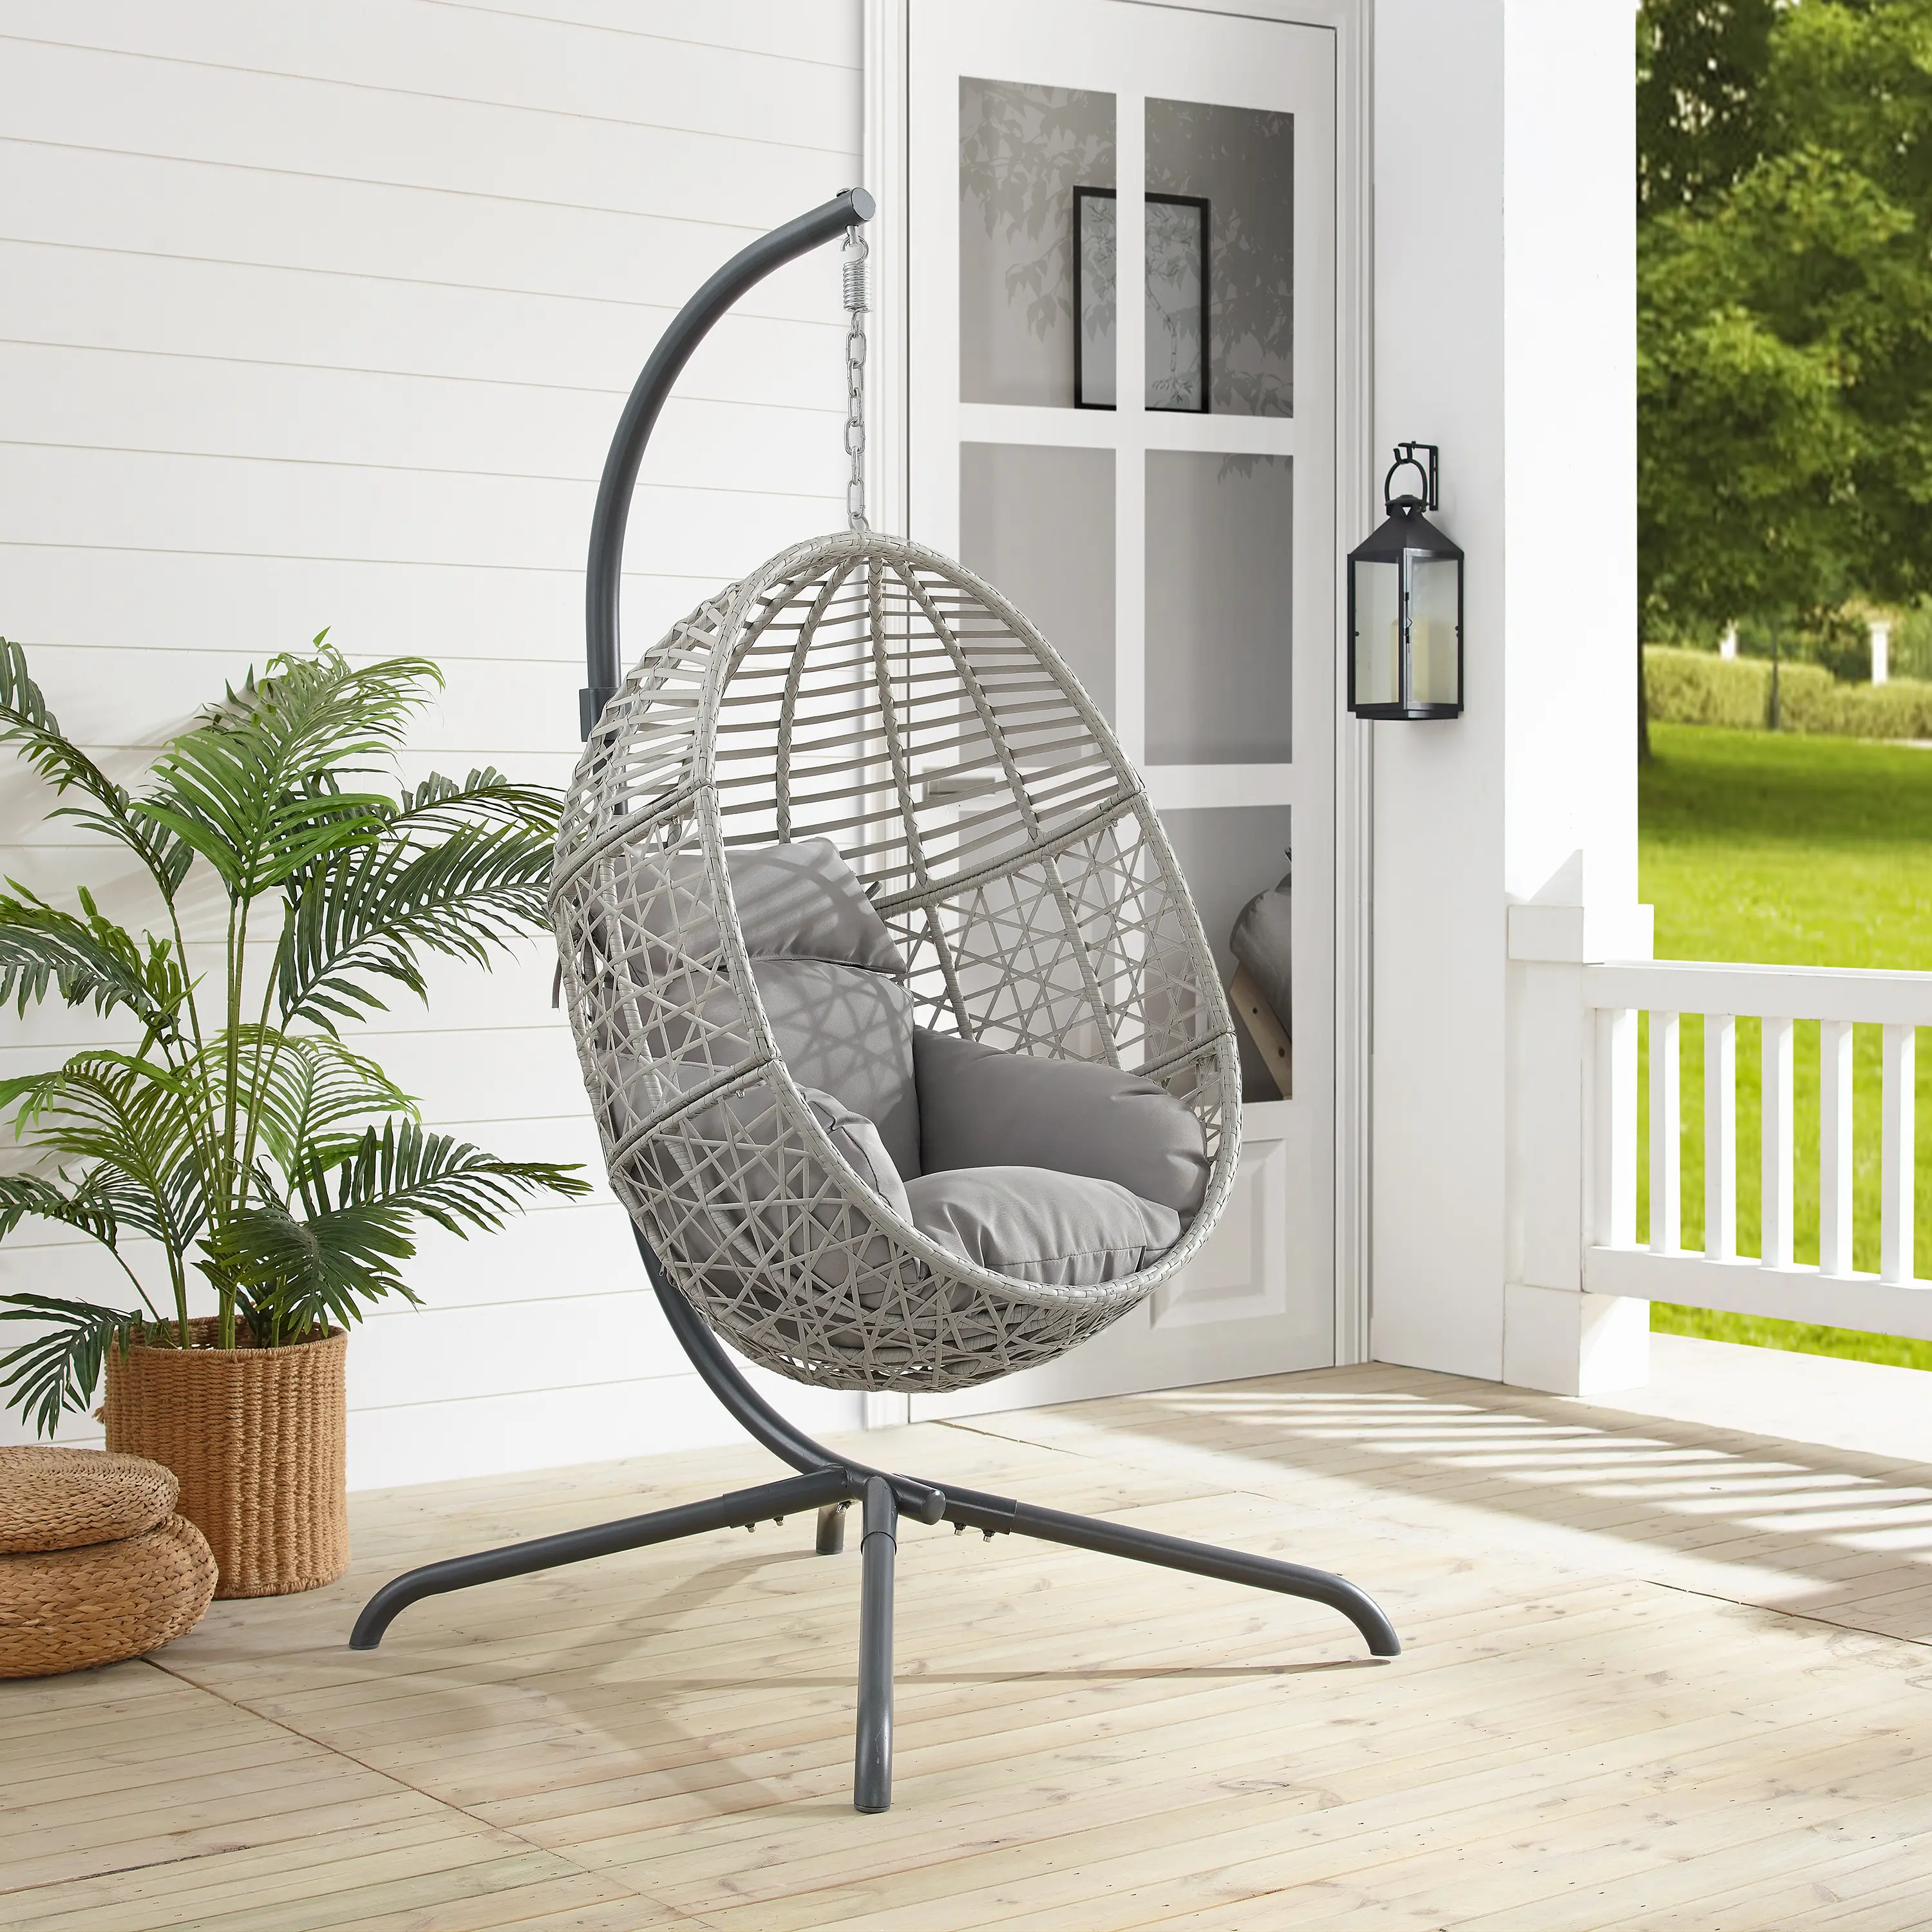 Lorelei Indoor/Outdoor Wicker Hanging Egg Chair